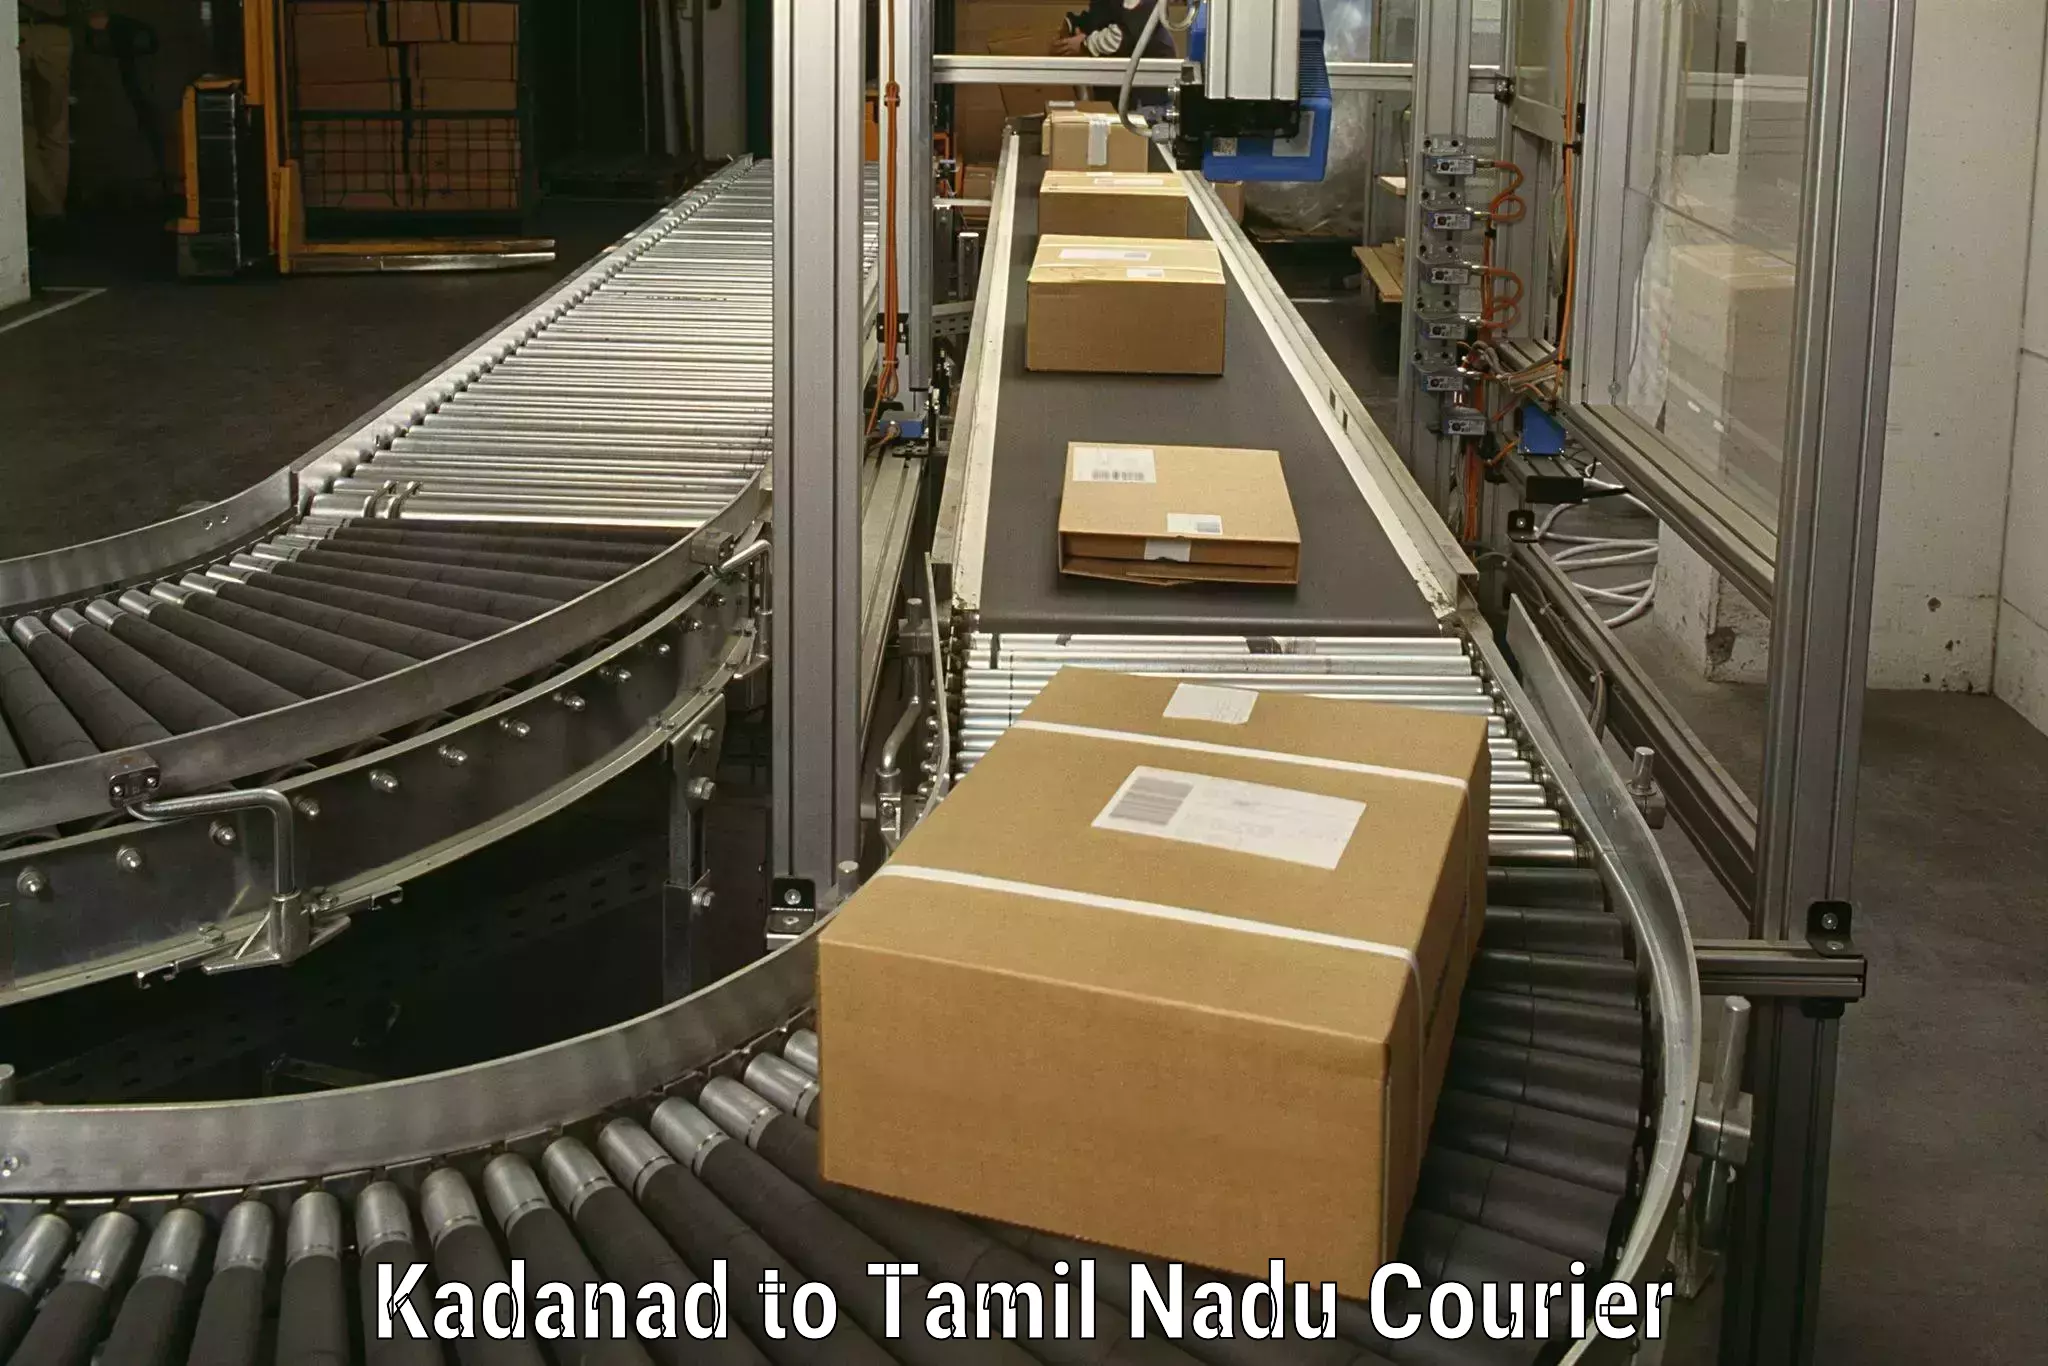 Furniture transport professionals Kadanad to Lalgudi